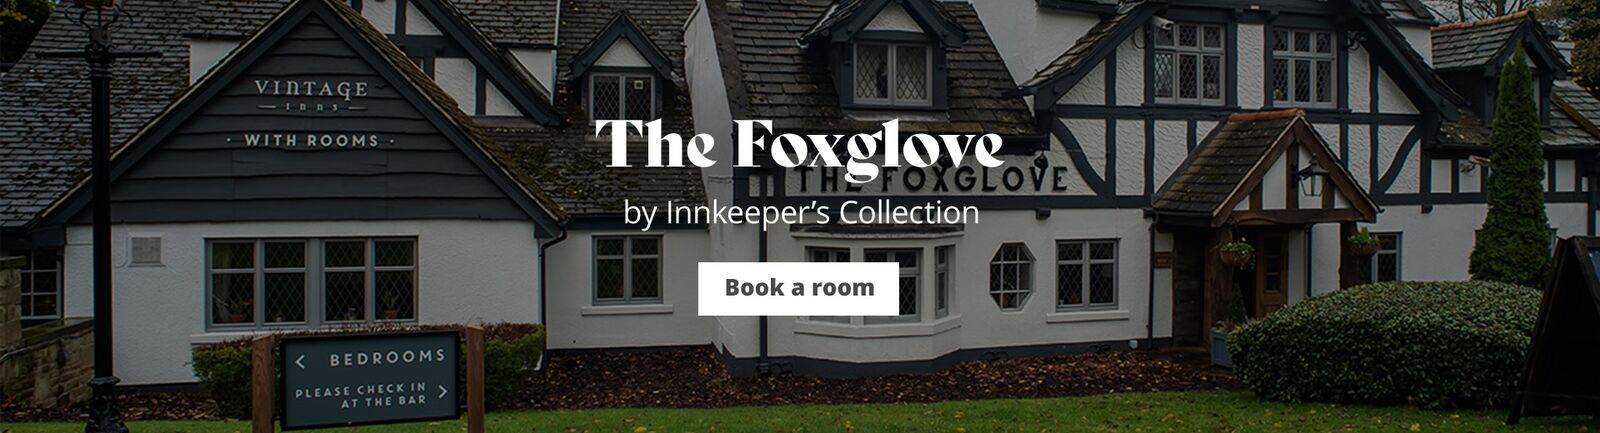 The Foxglove